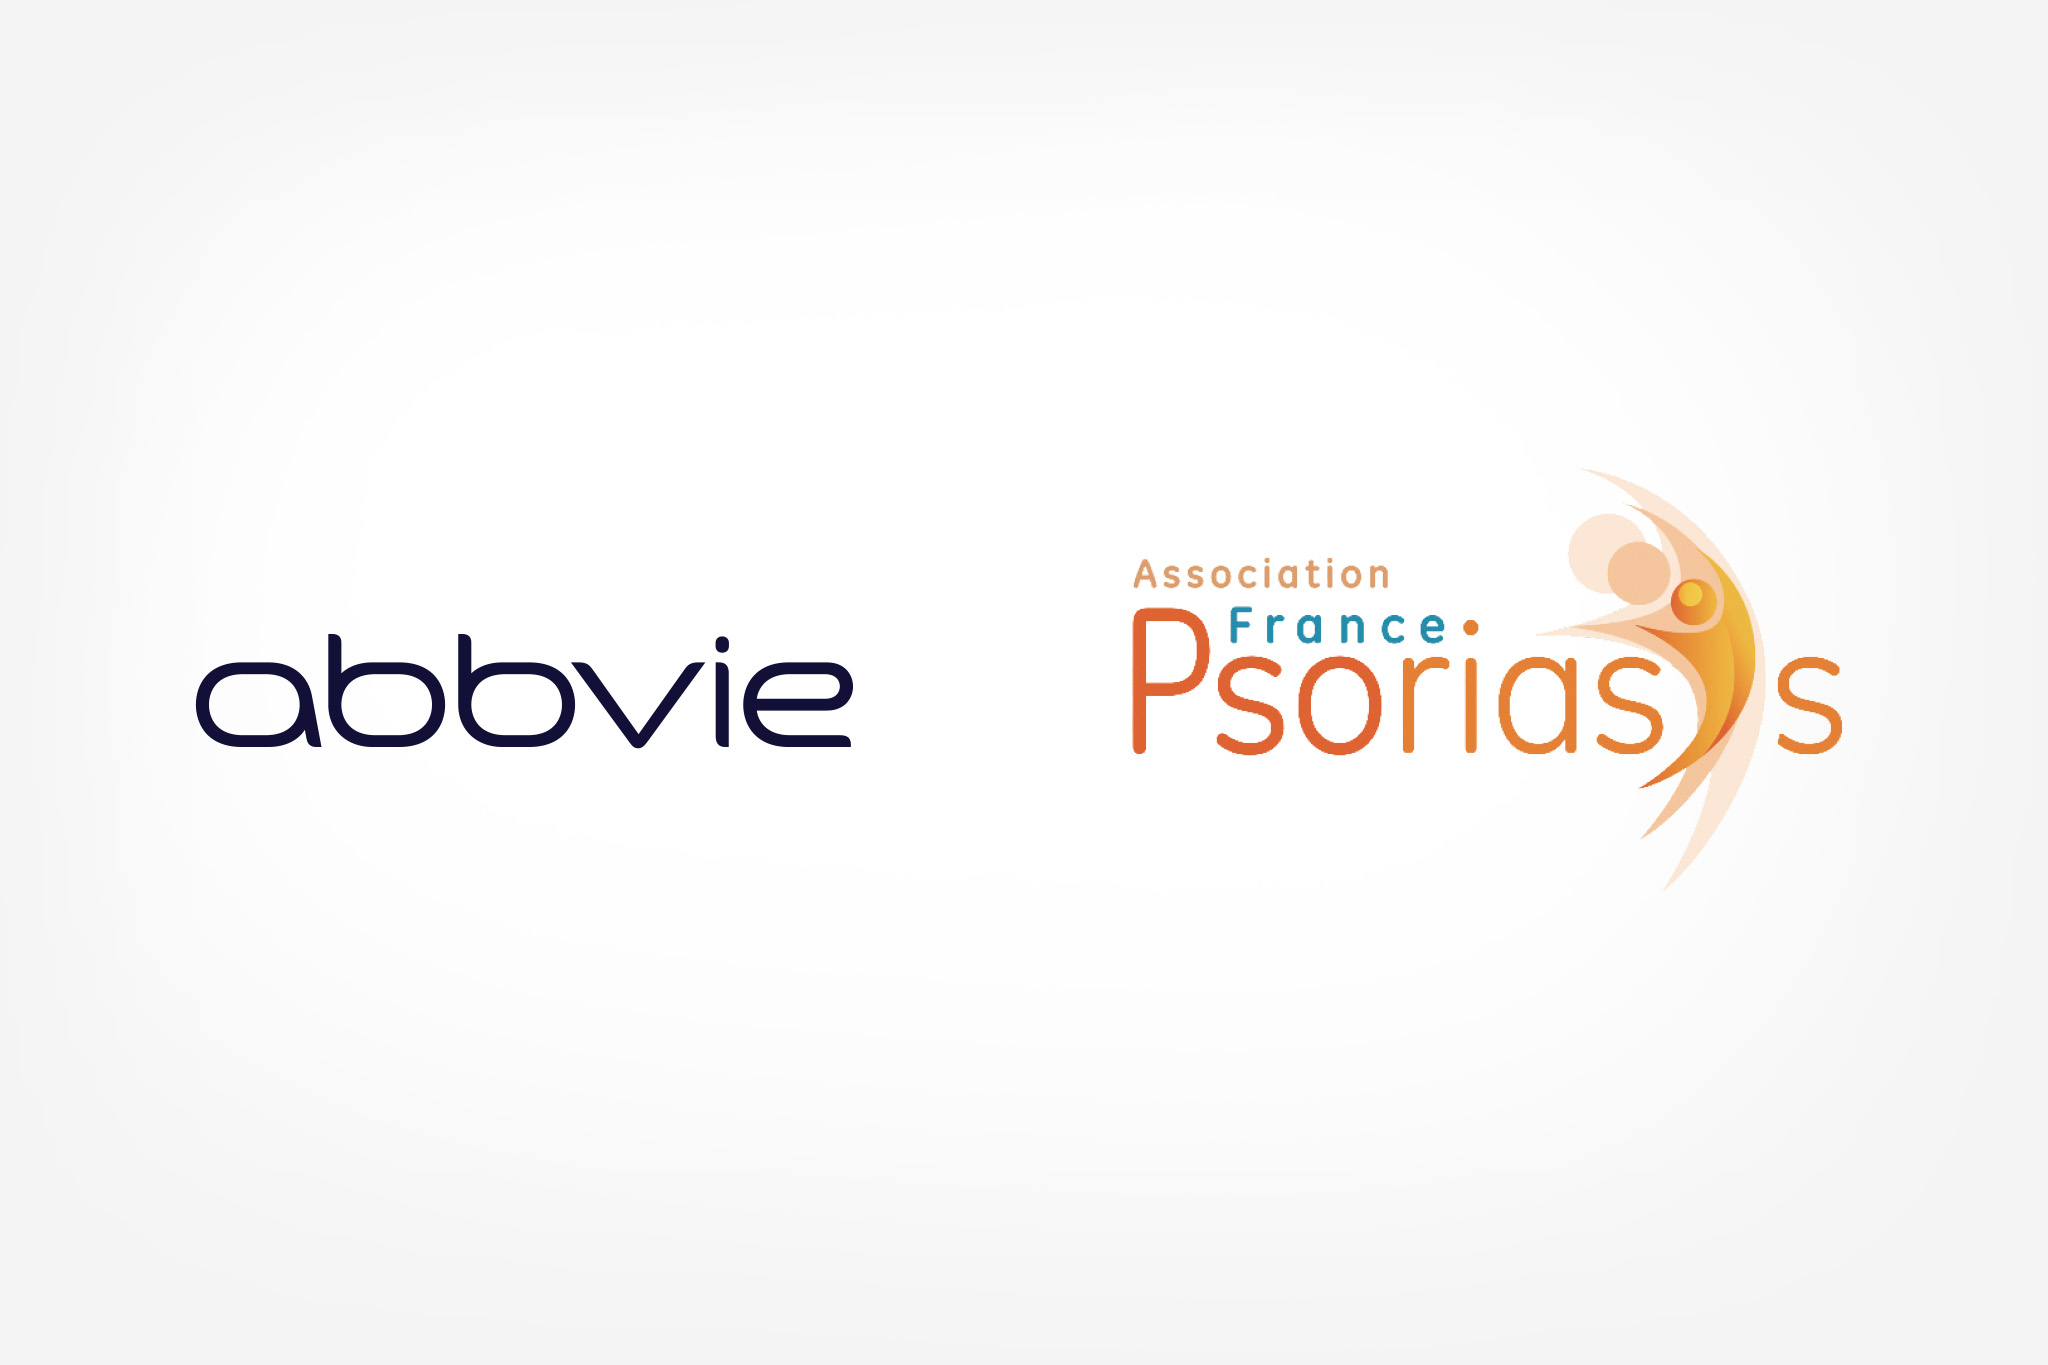 AbbVie et l'association France Psoriasis en partenariat pour aider les patients à plaquer le psoriasis